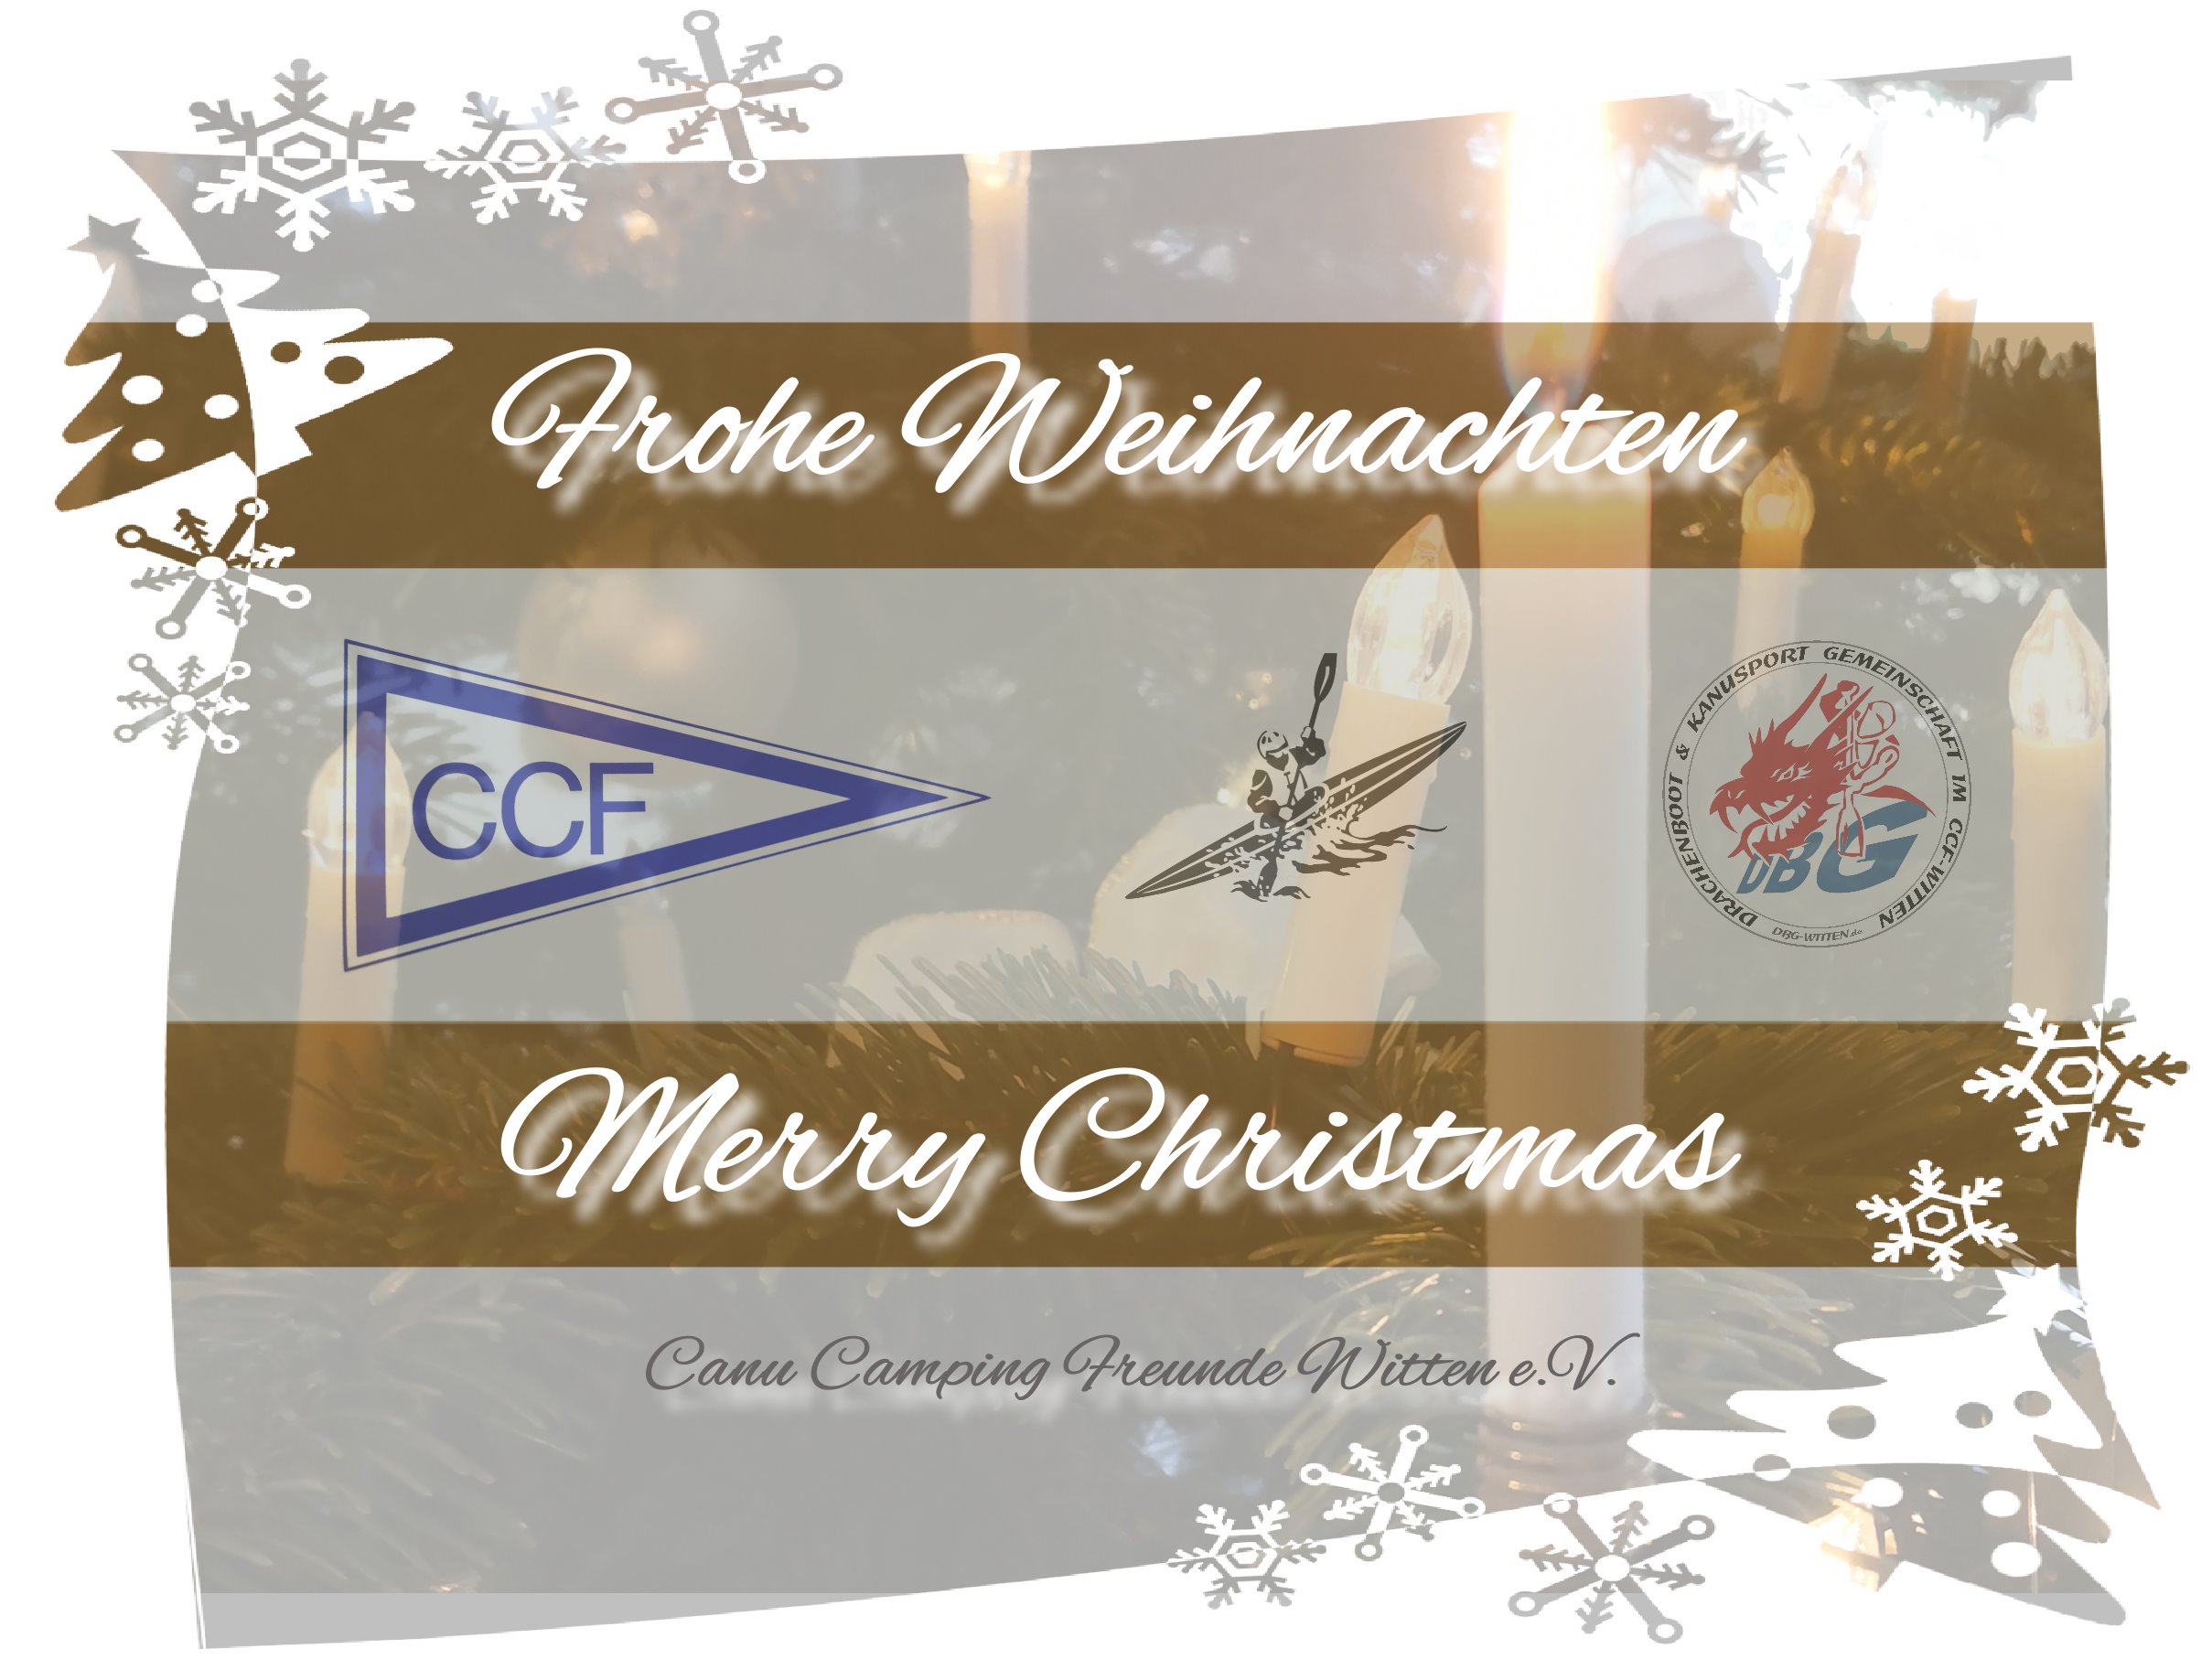 Grüße zu Weihnachten vom CCF-Witten und DBG-Witten